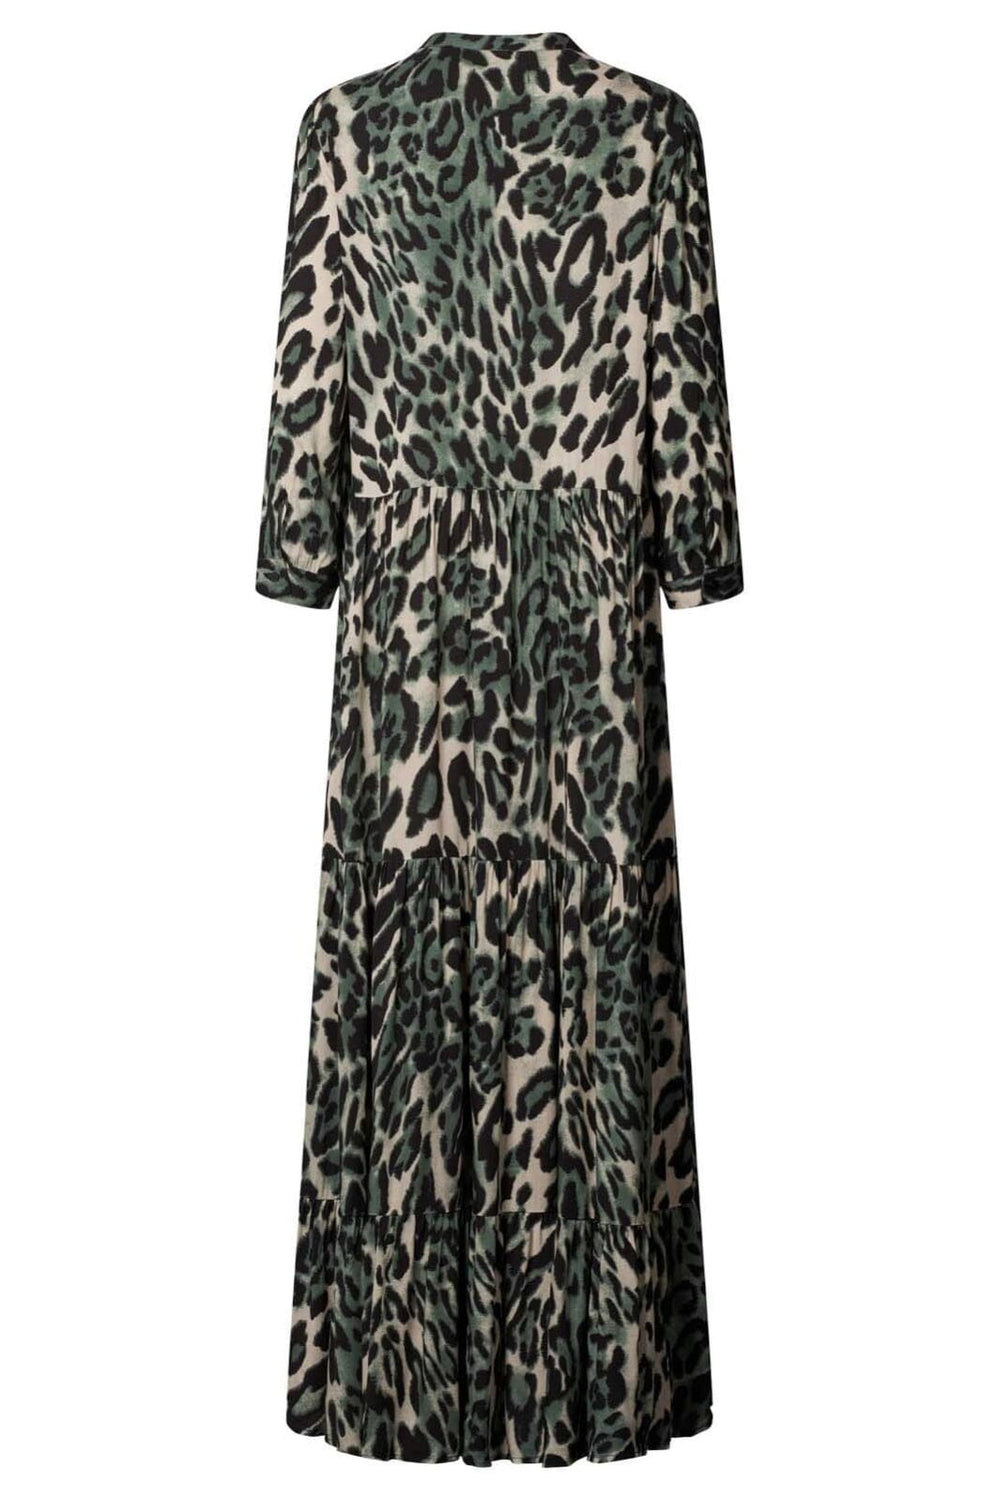 Forudbestilling - Lollys Laundry - Nee Dress - 72 Leopard Print Kjoler 